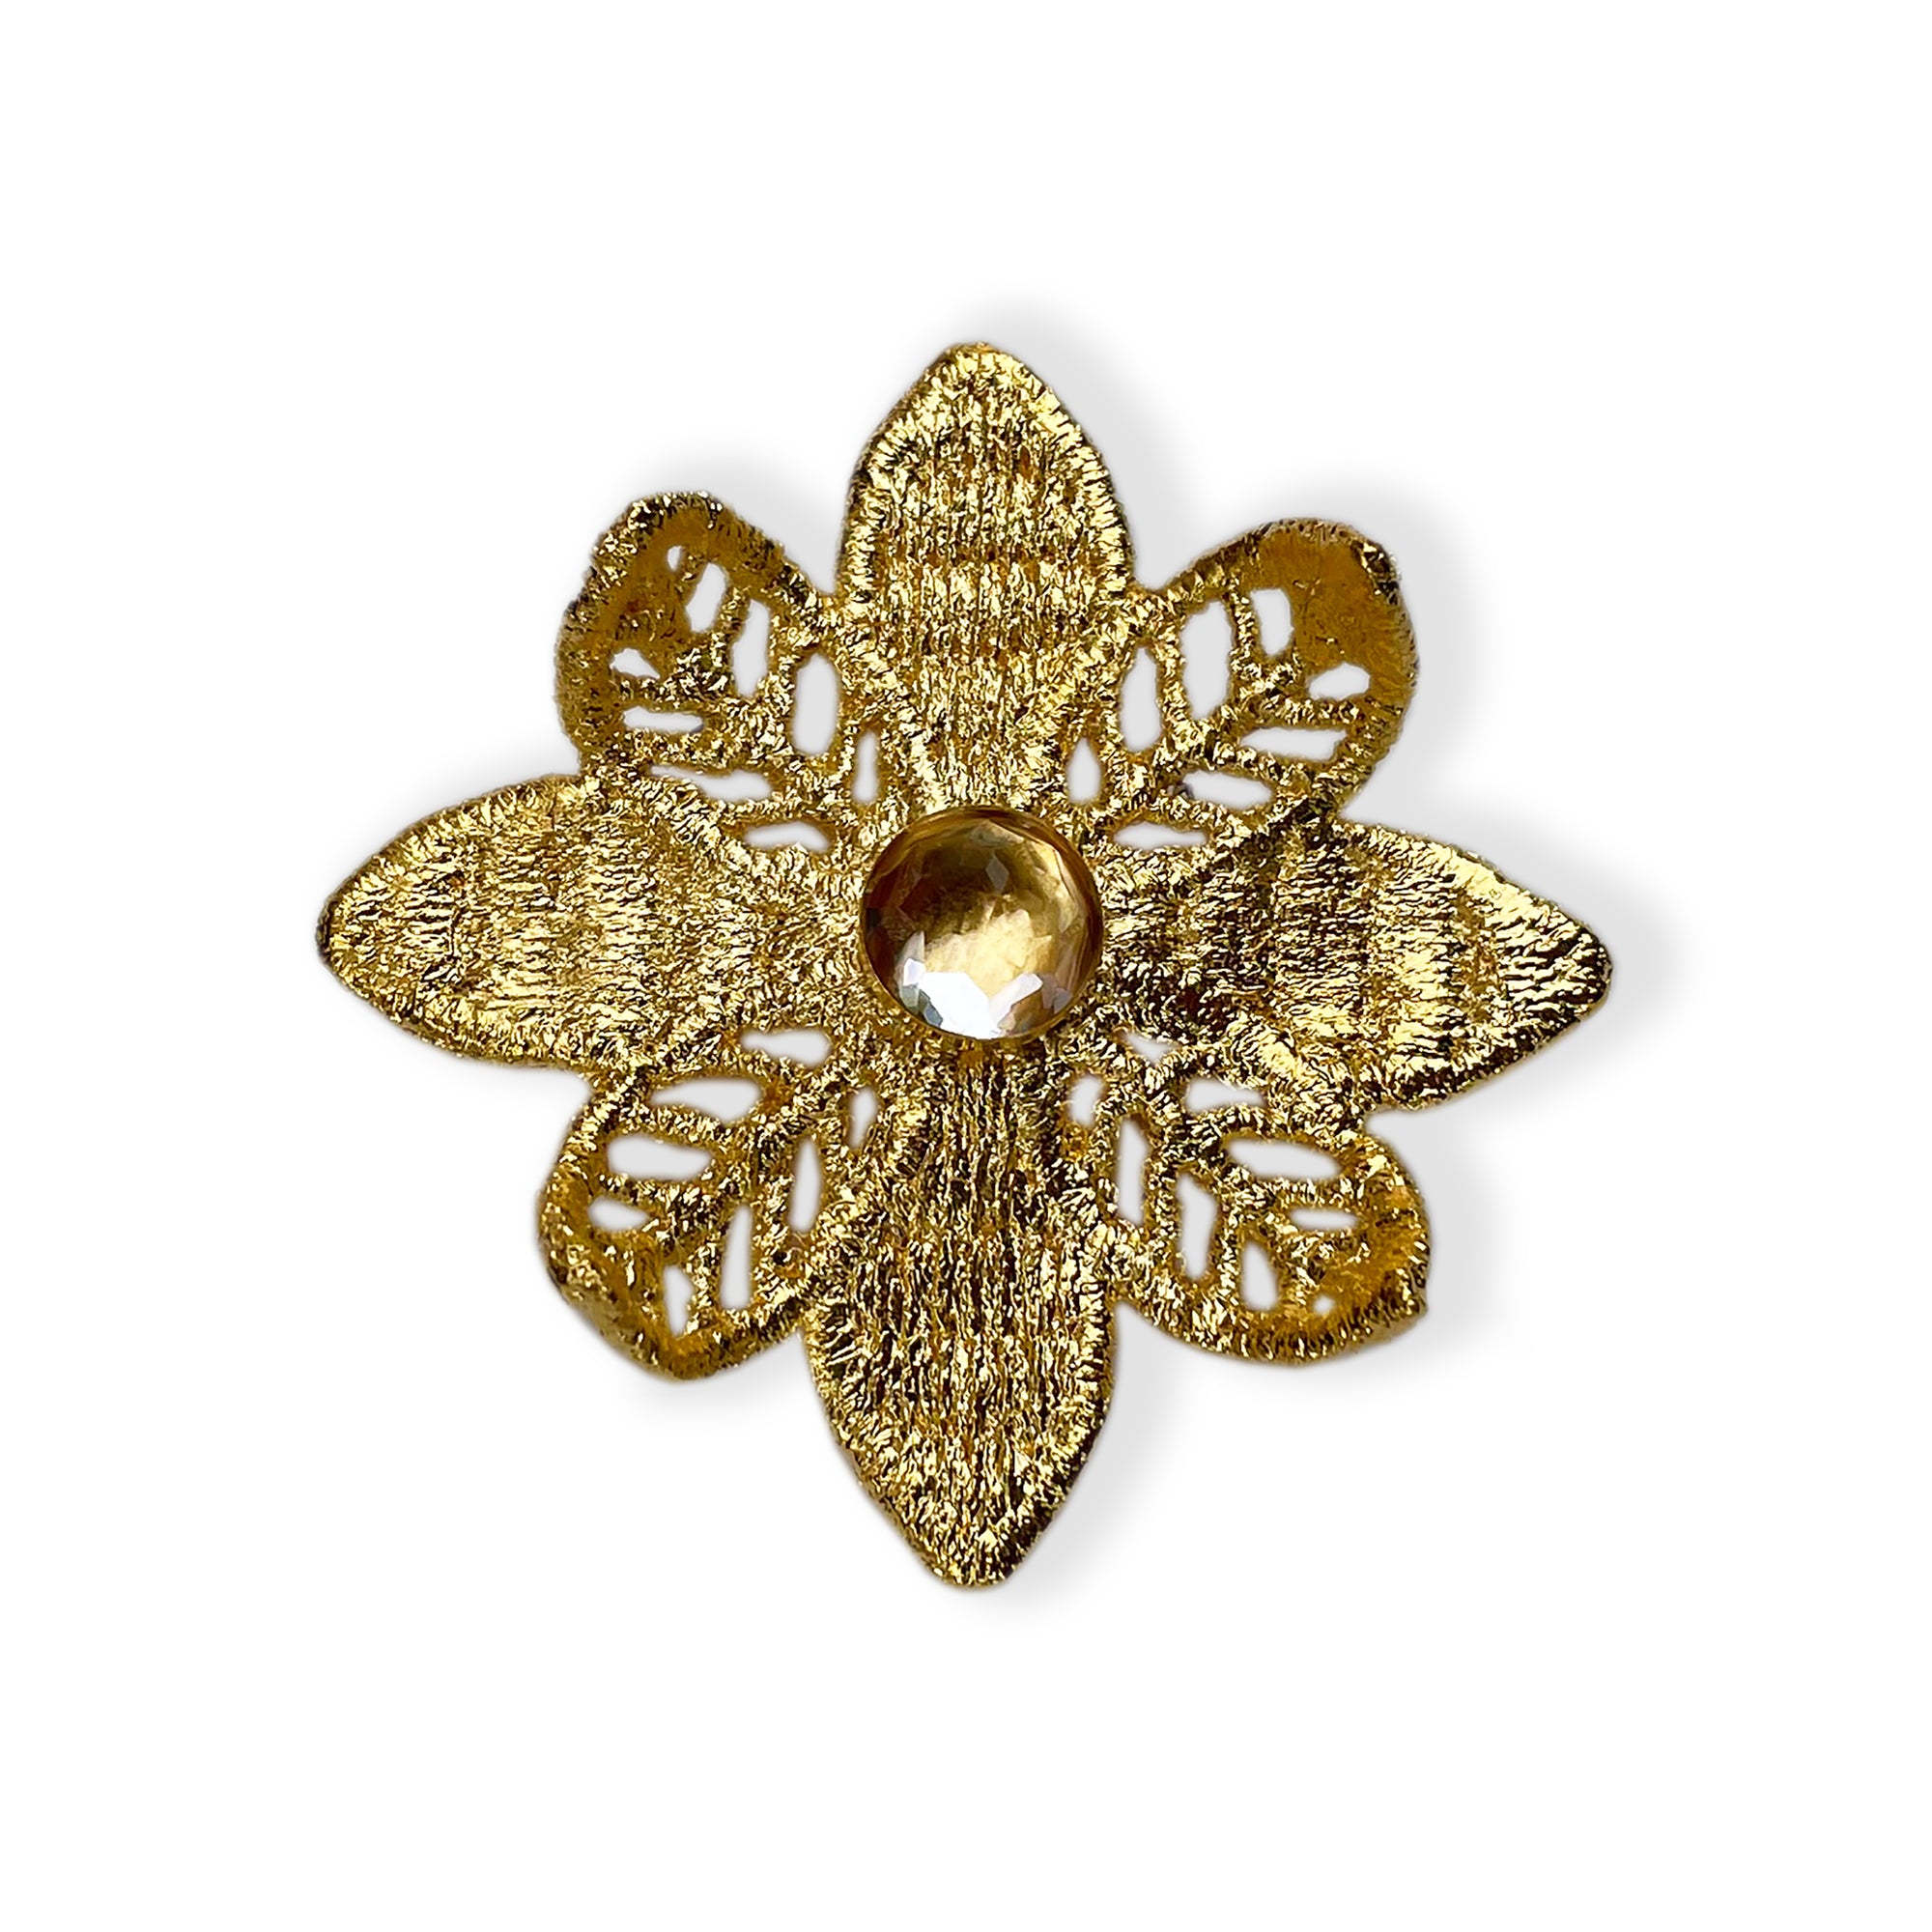 Bernadette flower lace brooch in 24k gold with Topaz stone.